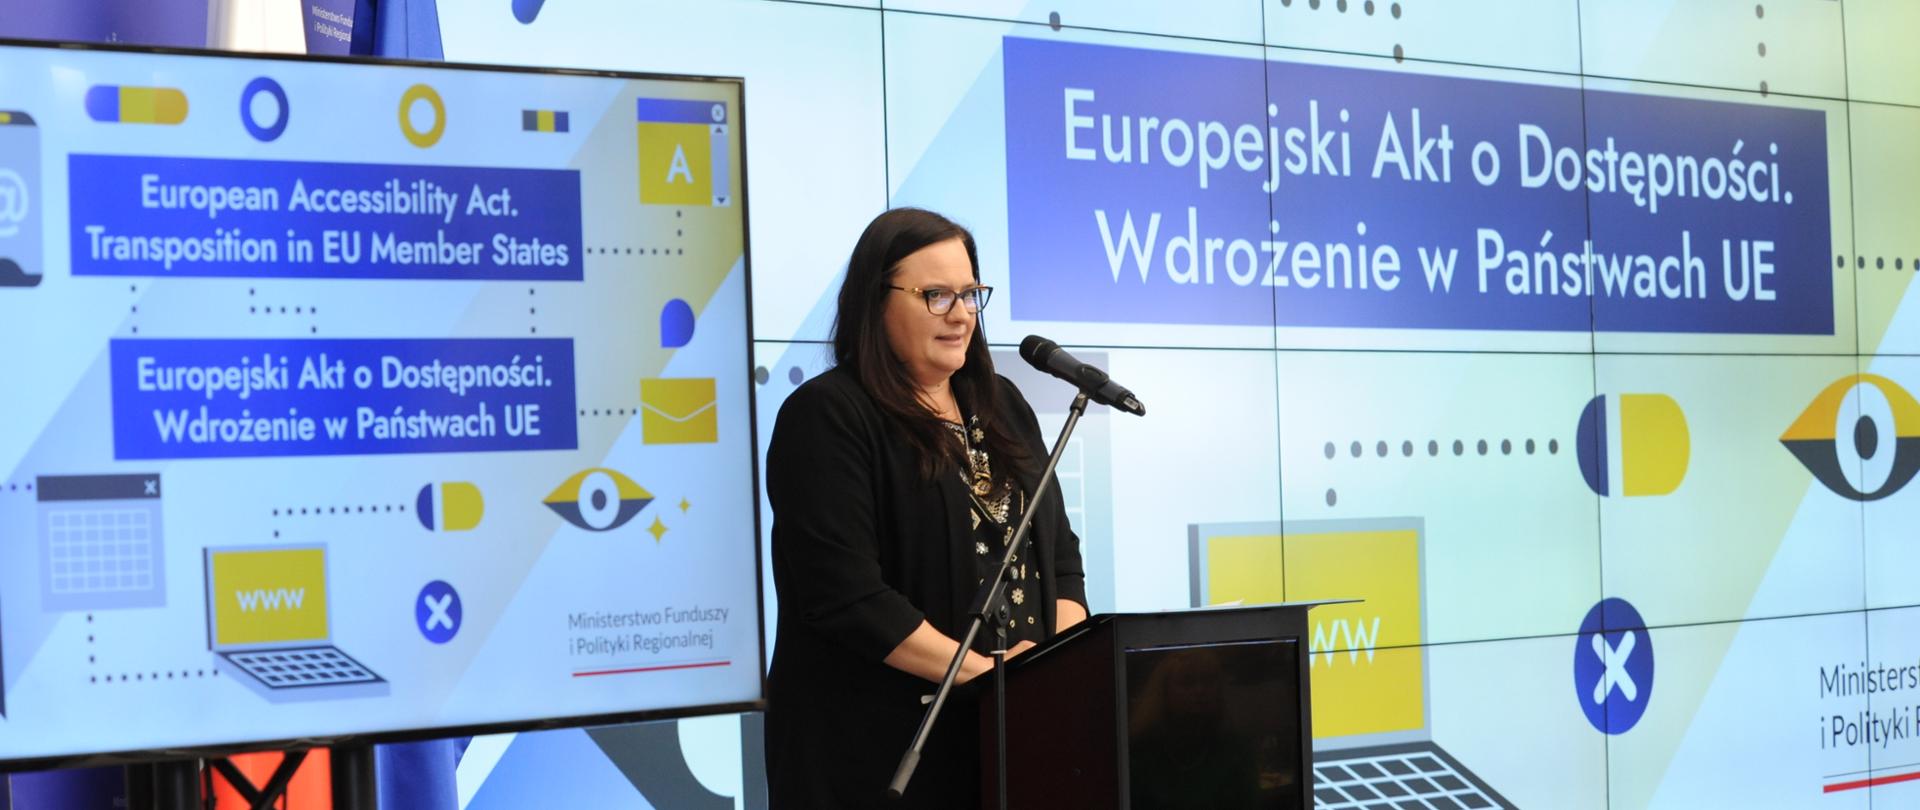 Wiceminister Małgorzata Jarosińska-Jedynak w mównicy z mikrofonem. Za nią na ekranie napis: "Europejski Akt o Dostępności".